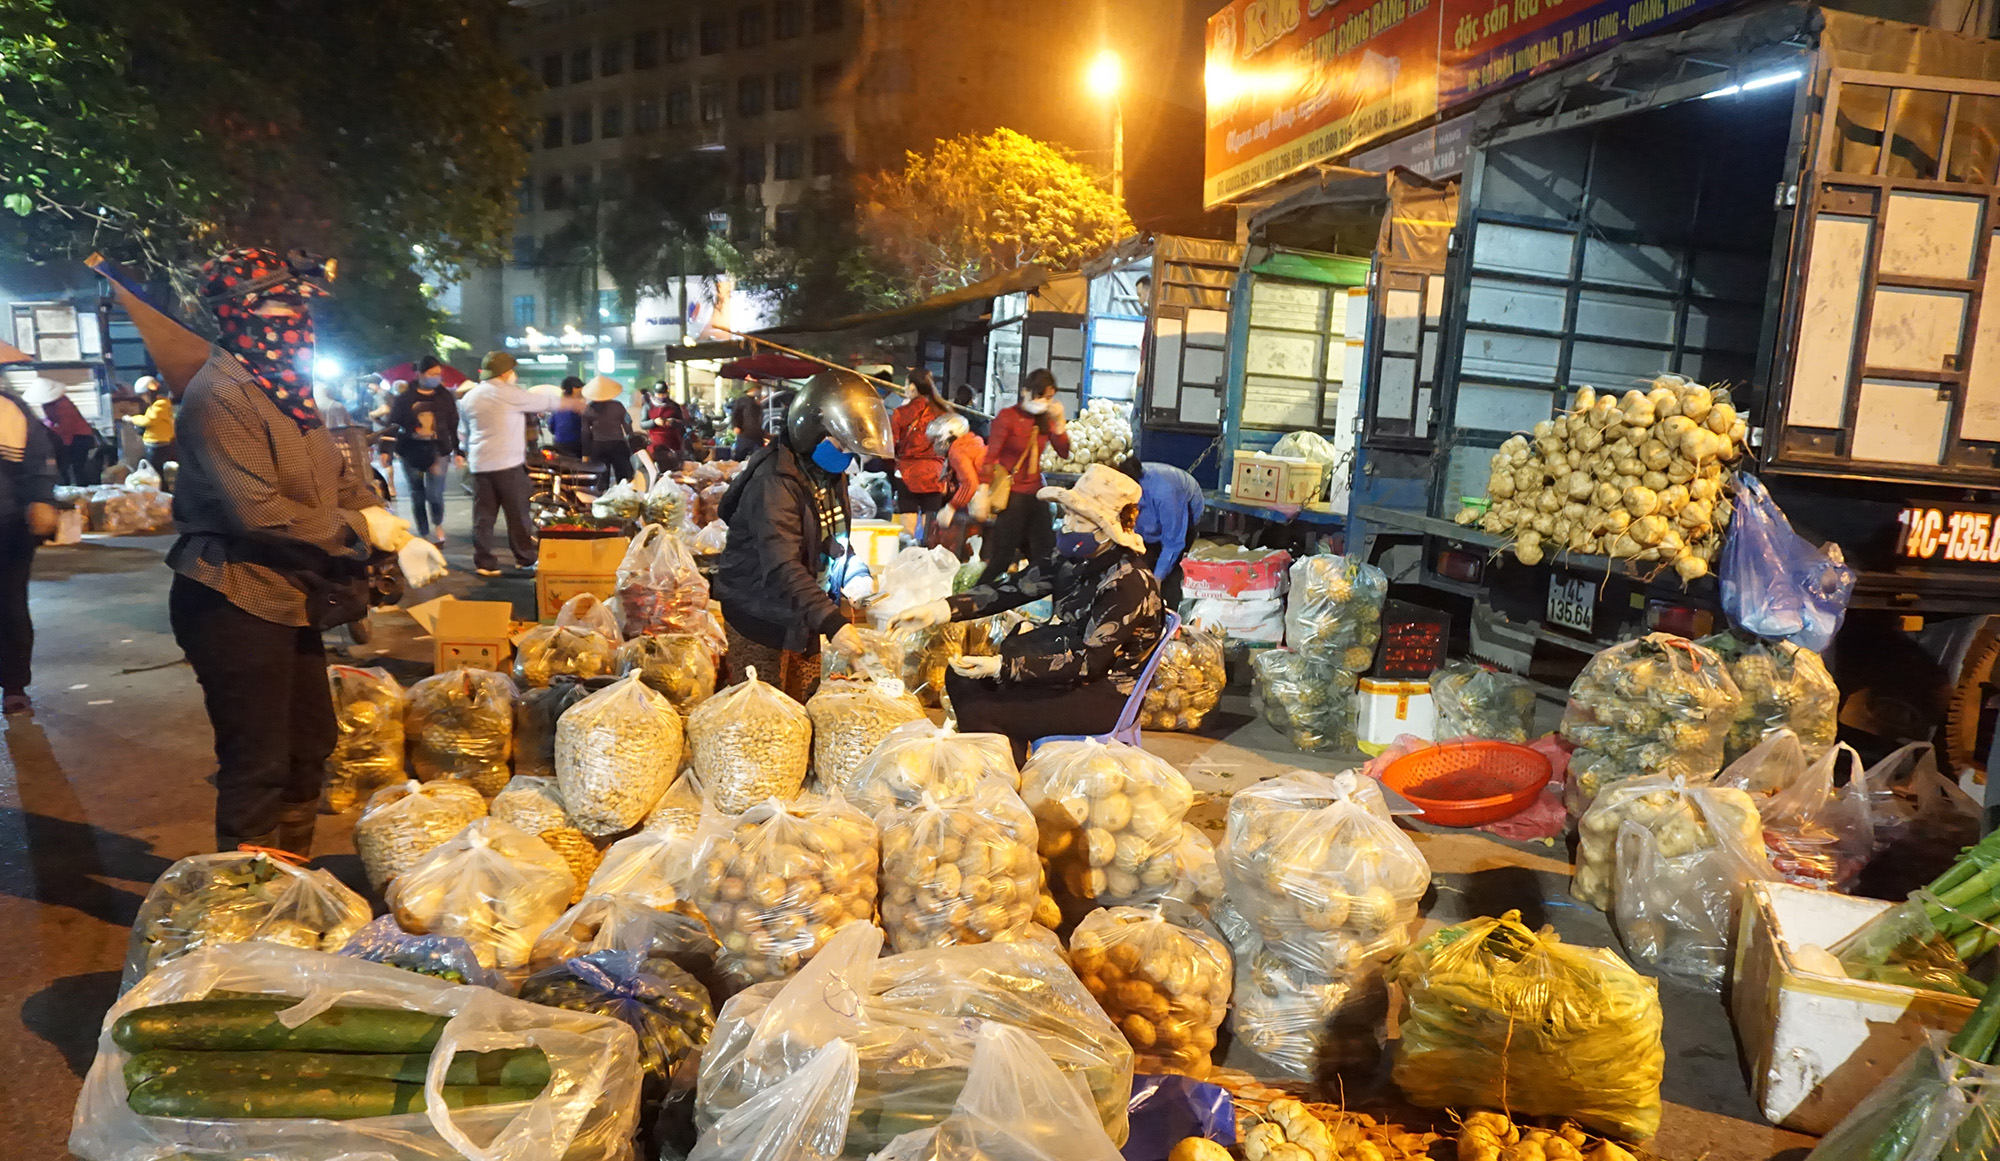 Lượng rau, củ quả trong chợ hết sức phong phú, đa dạng đáp ứng được nhu cầu mua bán của người dân.